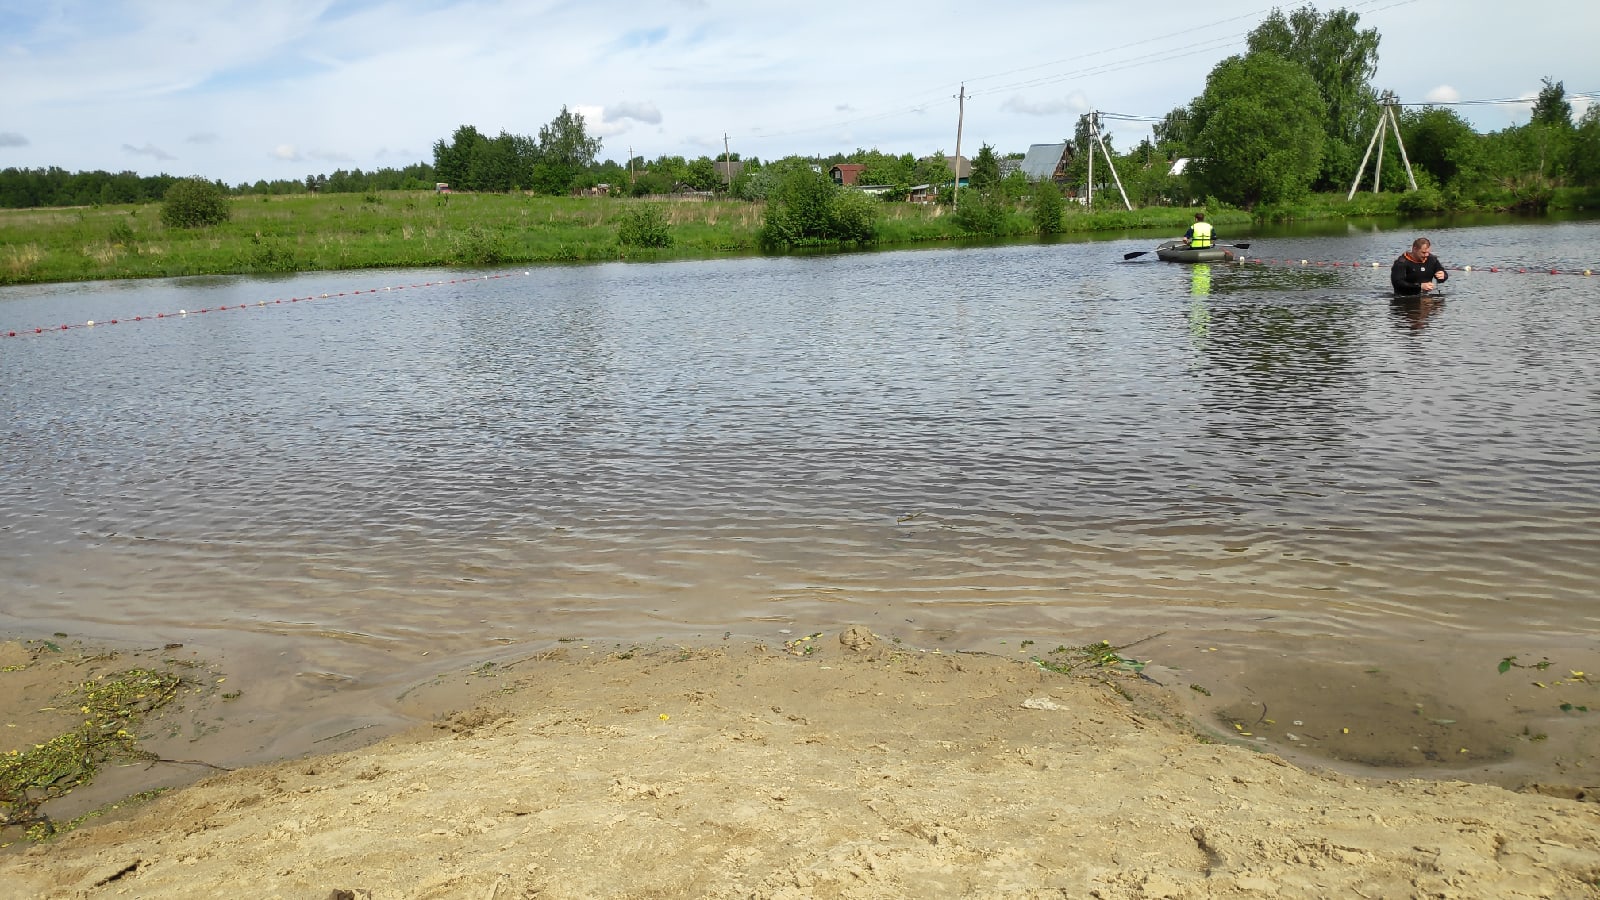 Владимирцам запретили купаться на двух городских пляжах: где законно поплавать с семьей